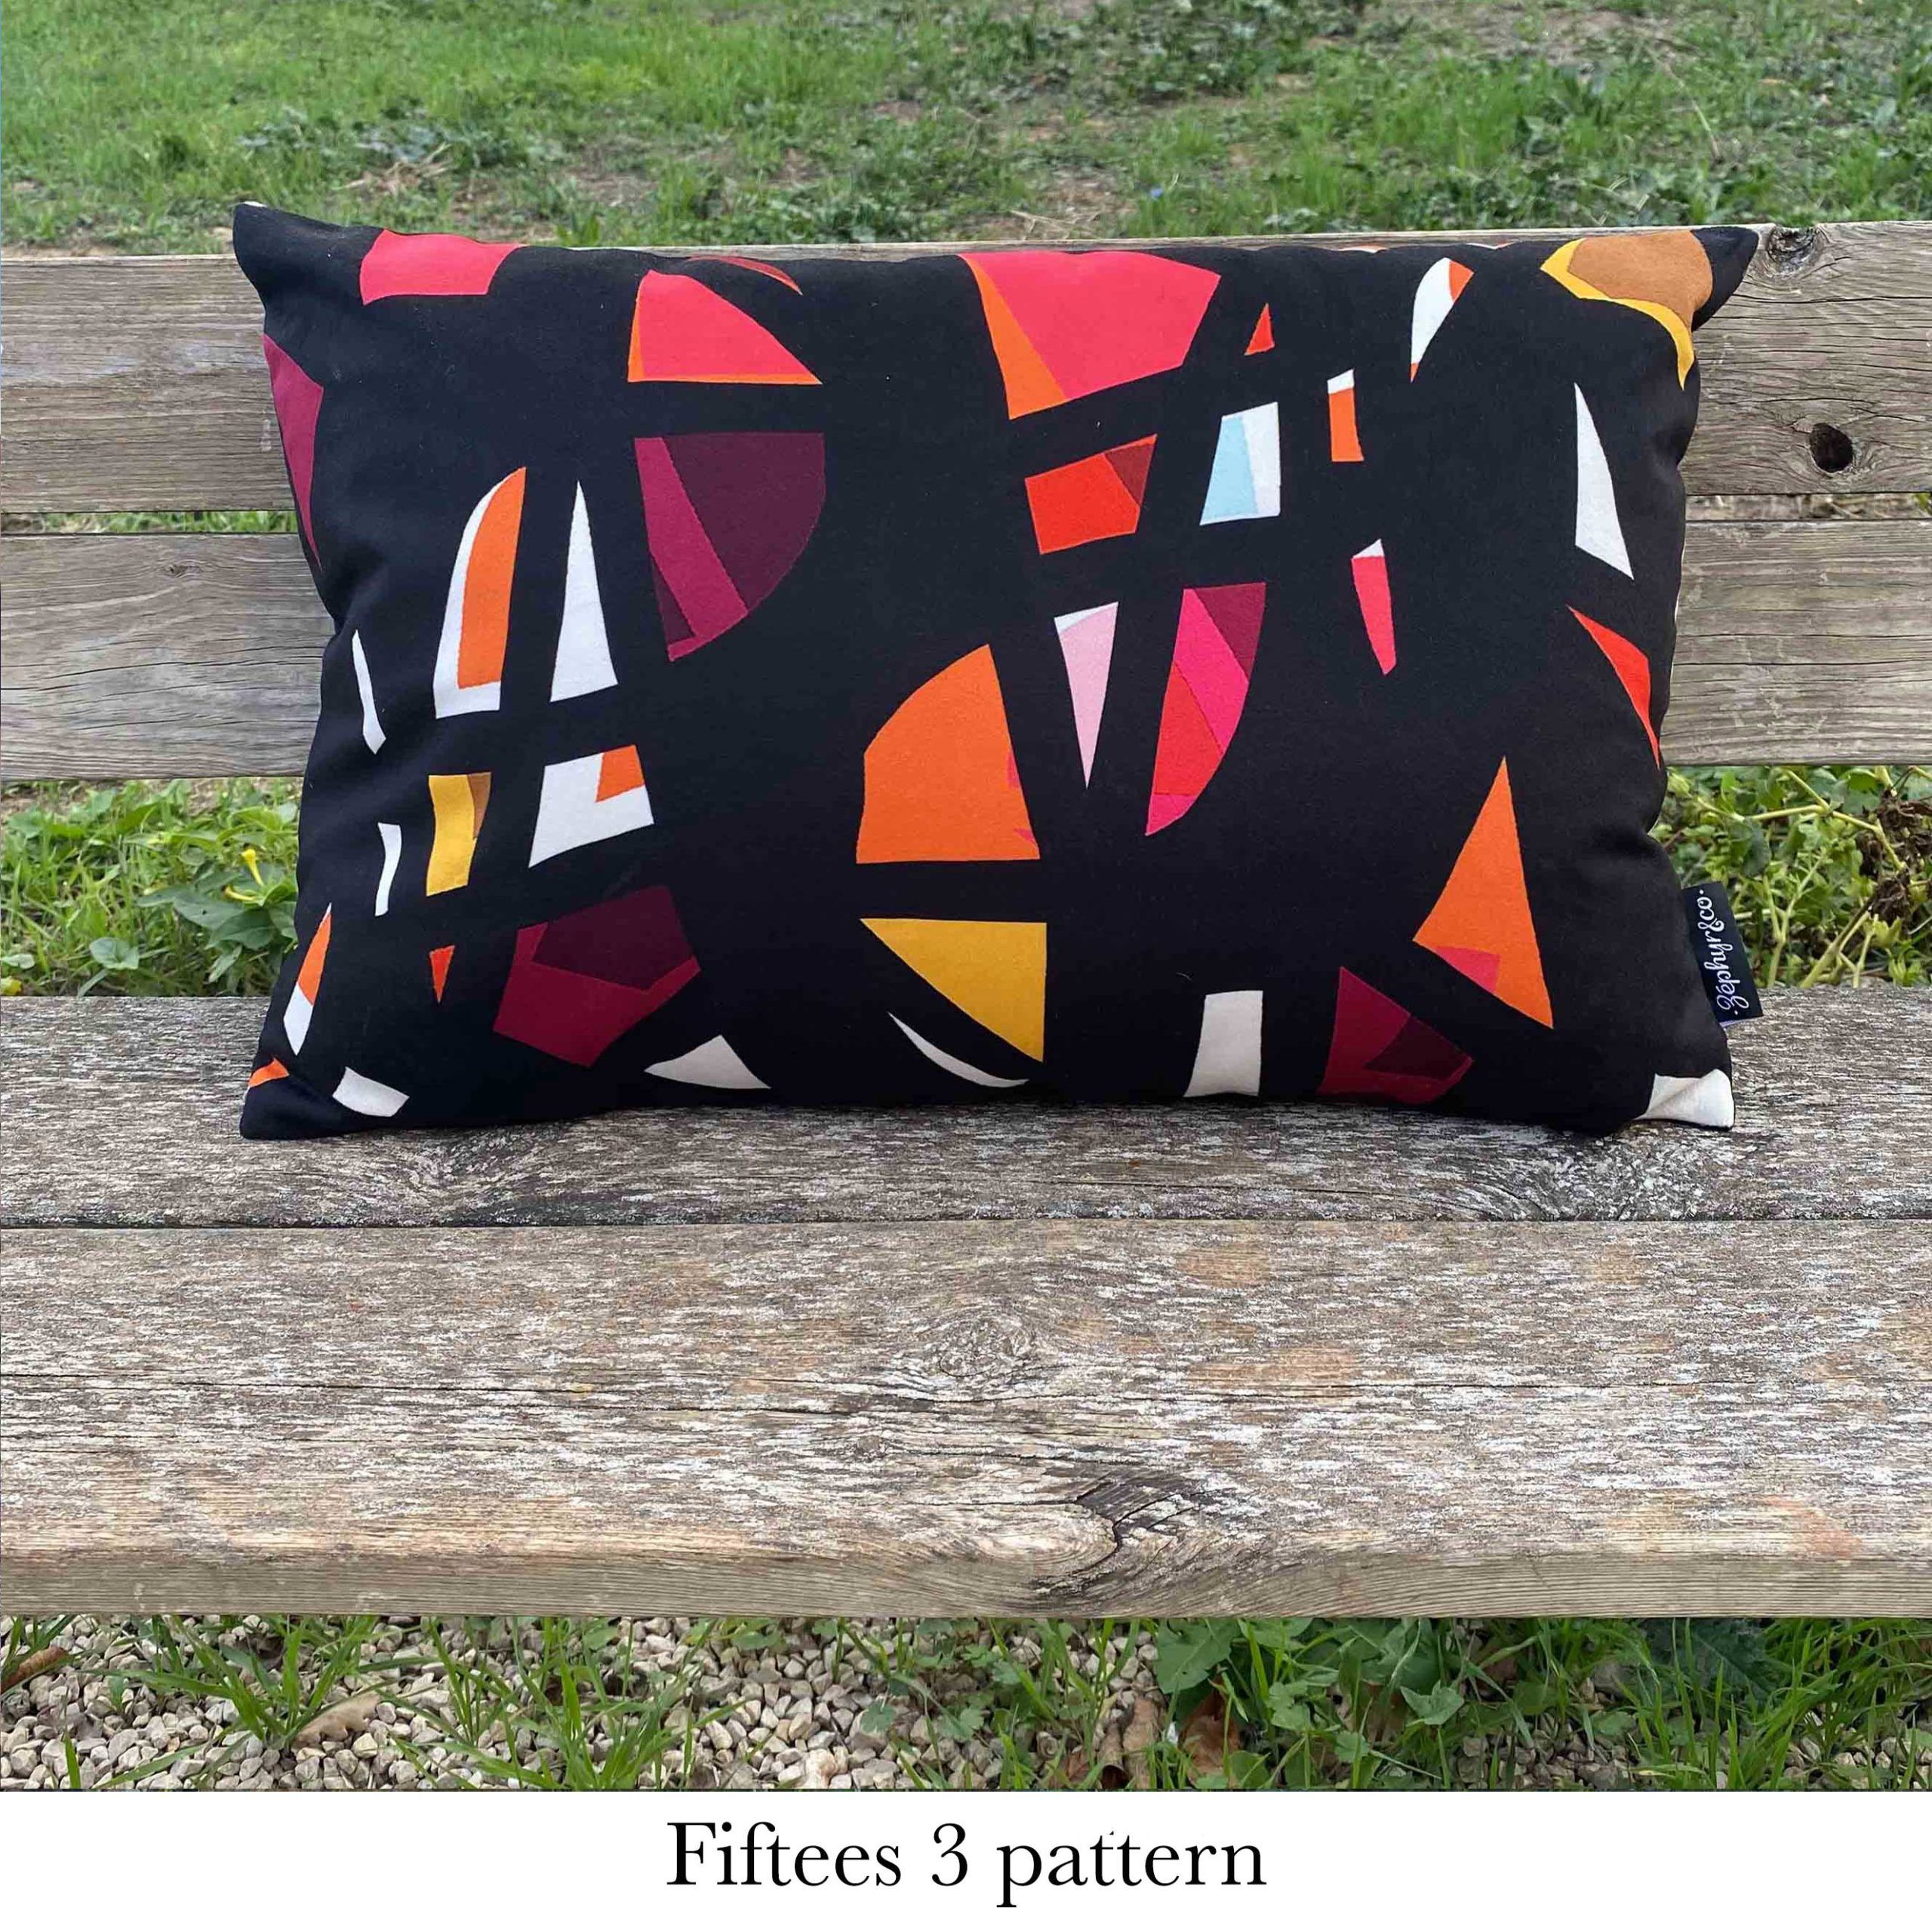 fiftees 3 pattern